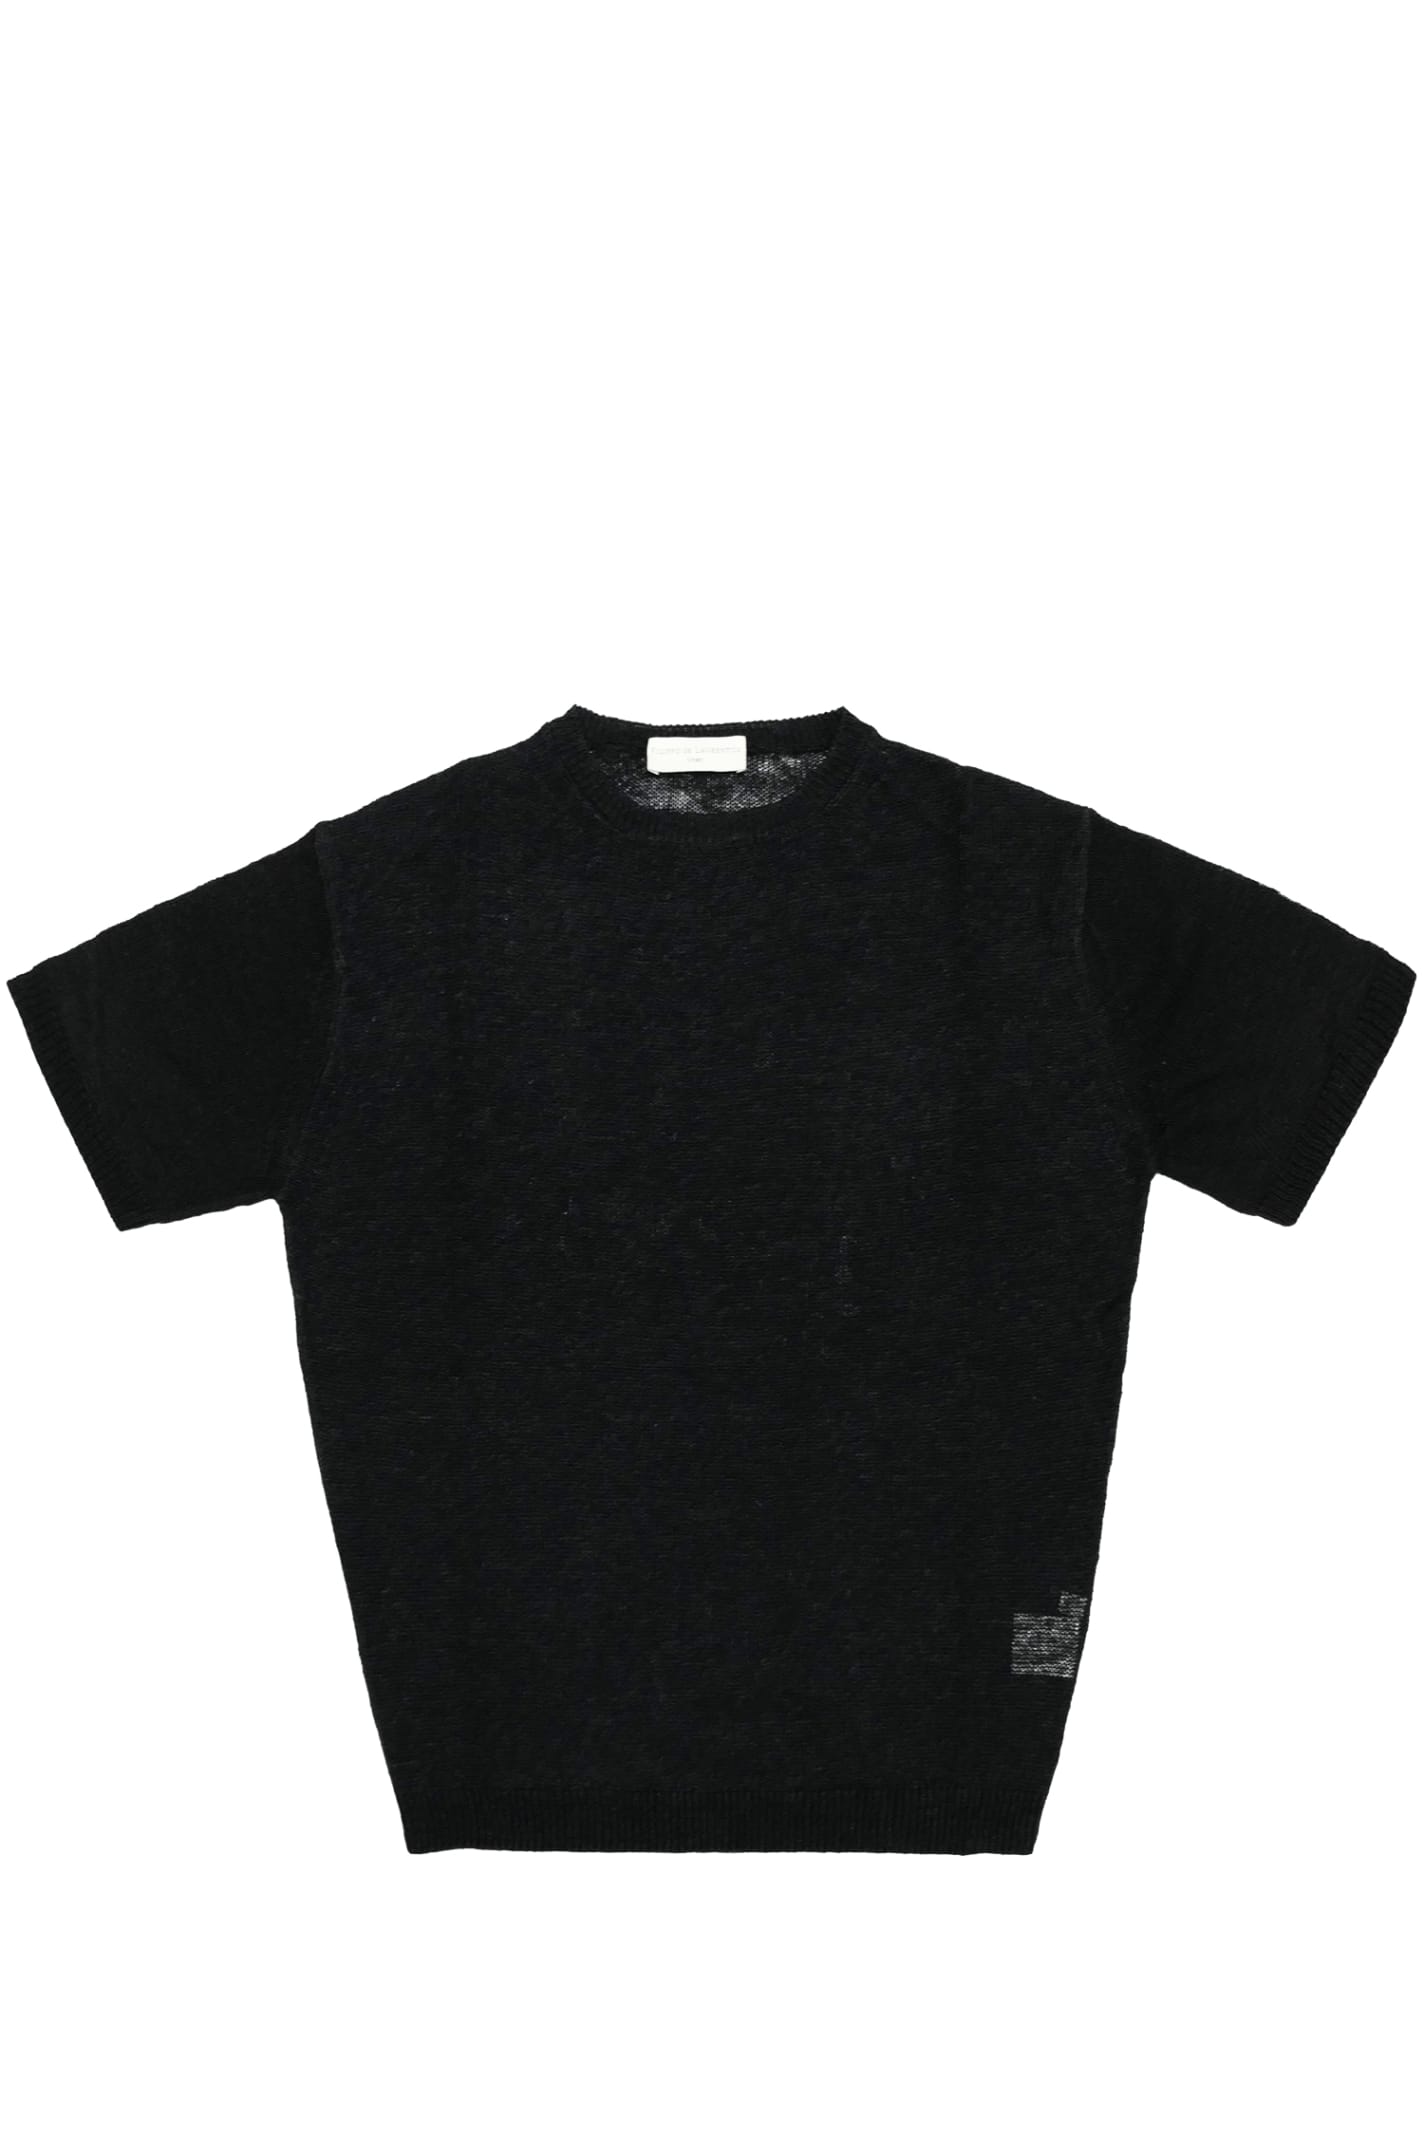 Shop Filippo De Laurentiis Sweater In Black